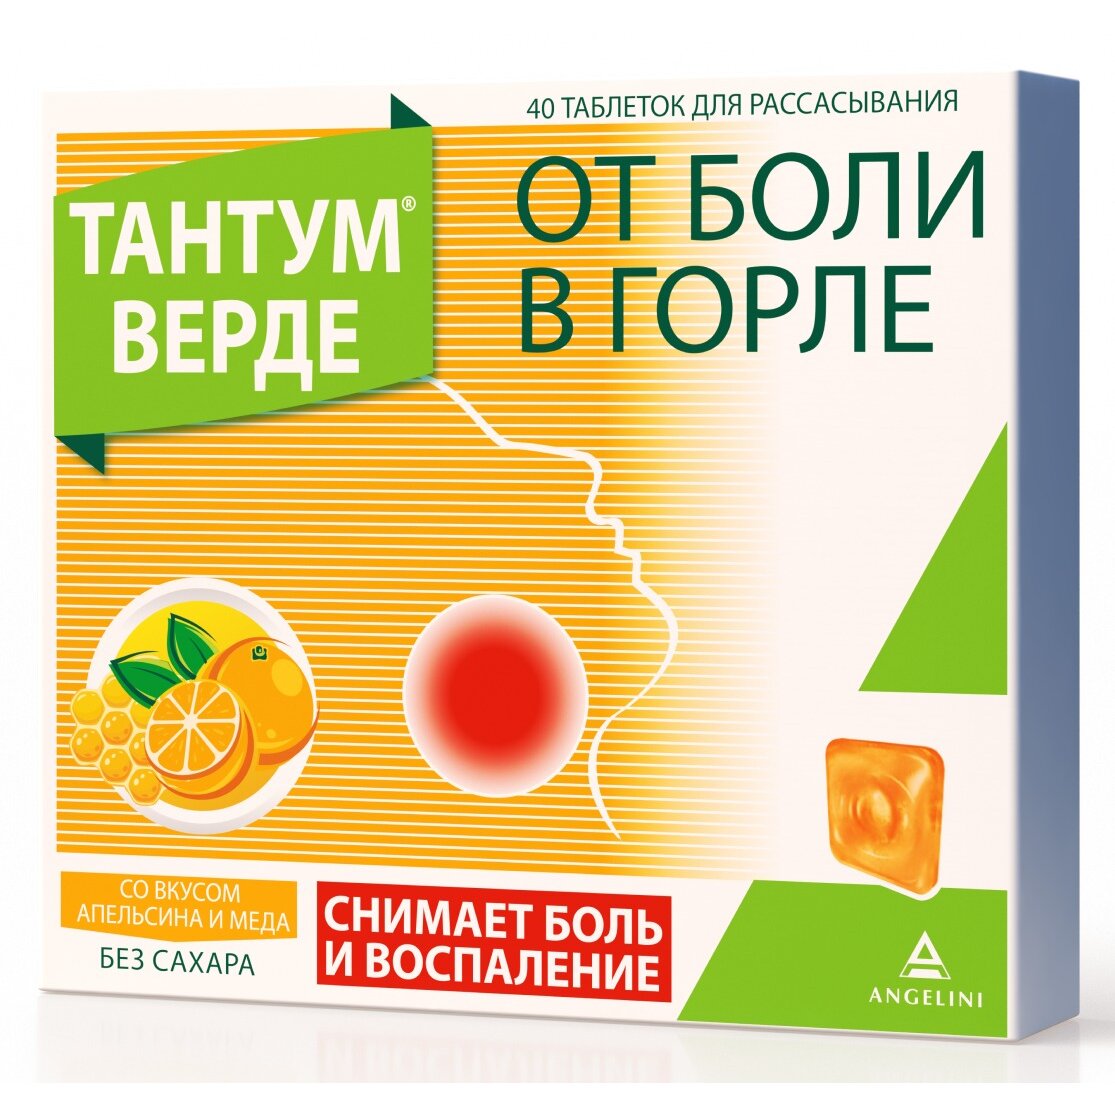 Тантум Верде таблетки для рассасывания 3 мг Апельсин и мед 40 шт.